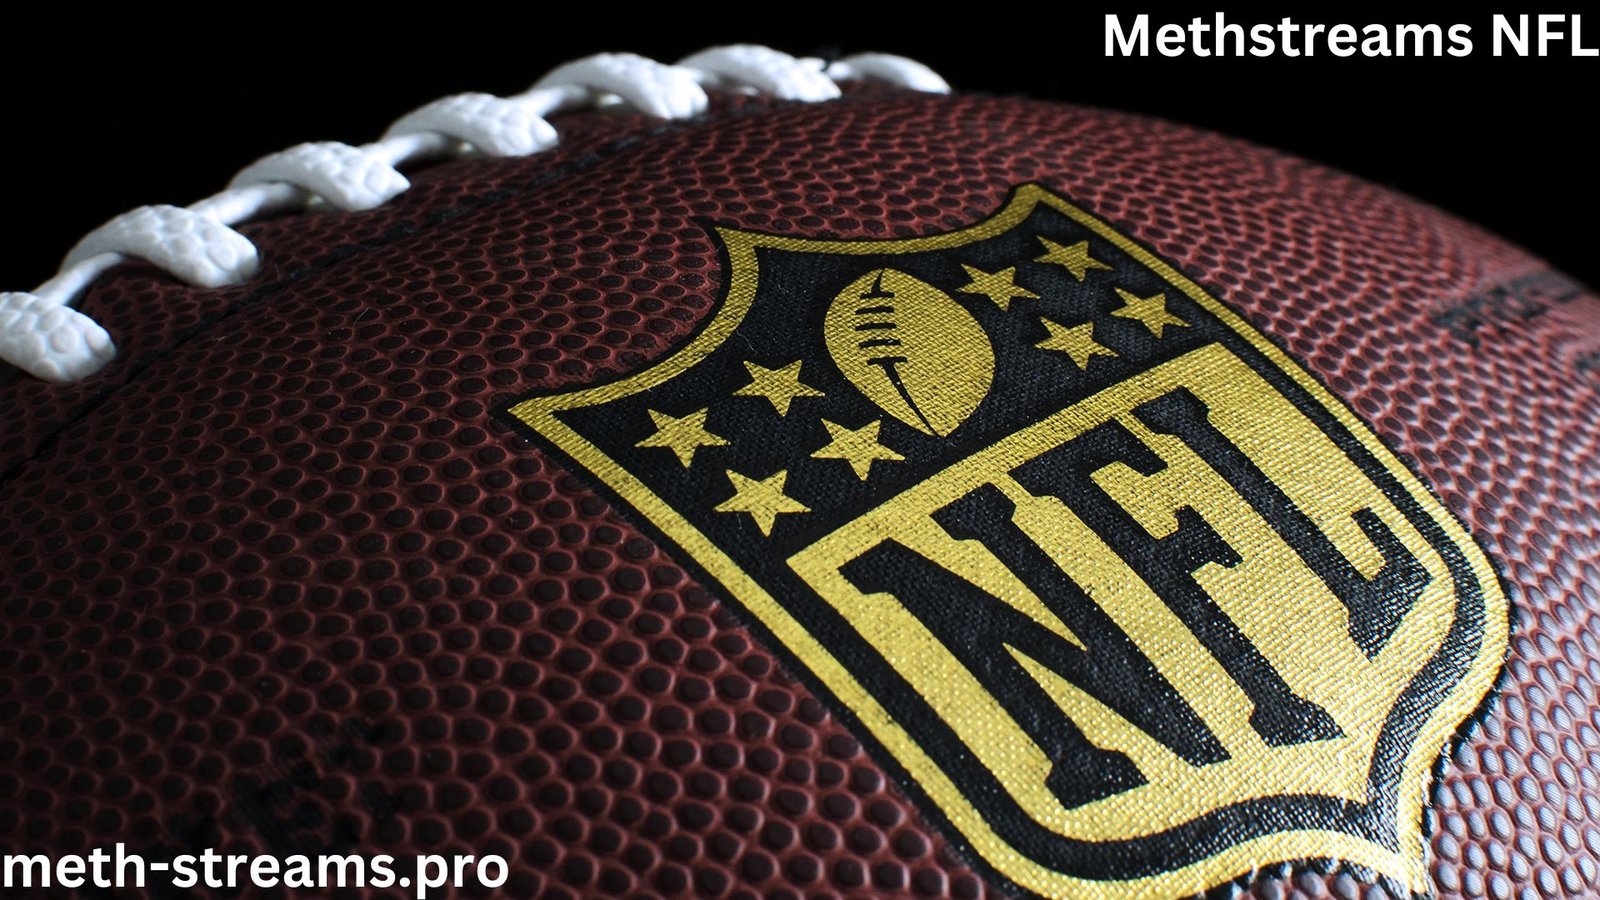 Methstreams NFL Hub Updates, Analysis & Highlights